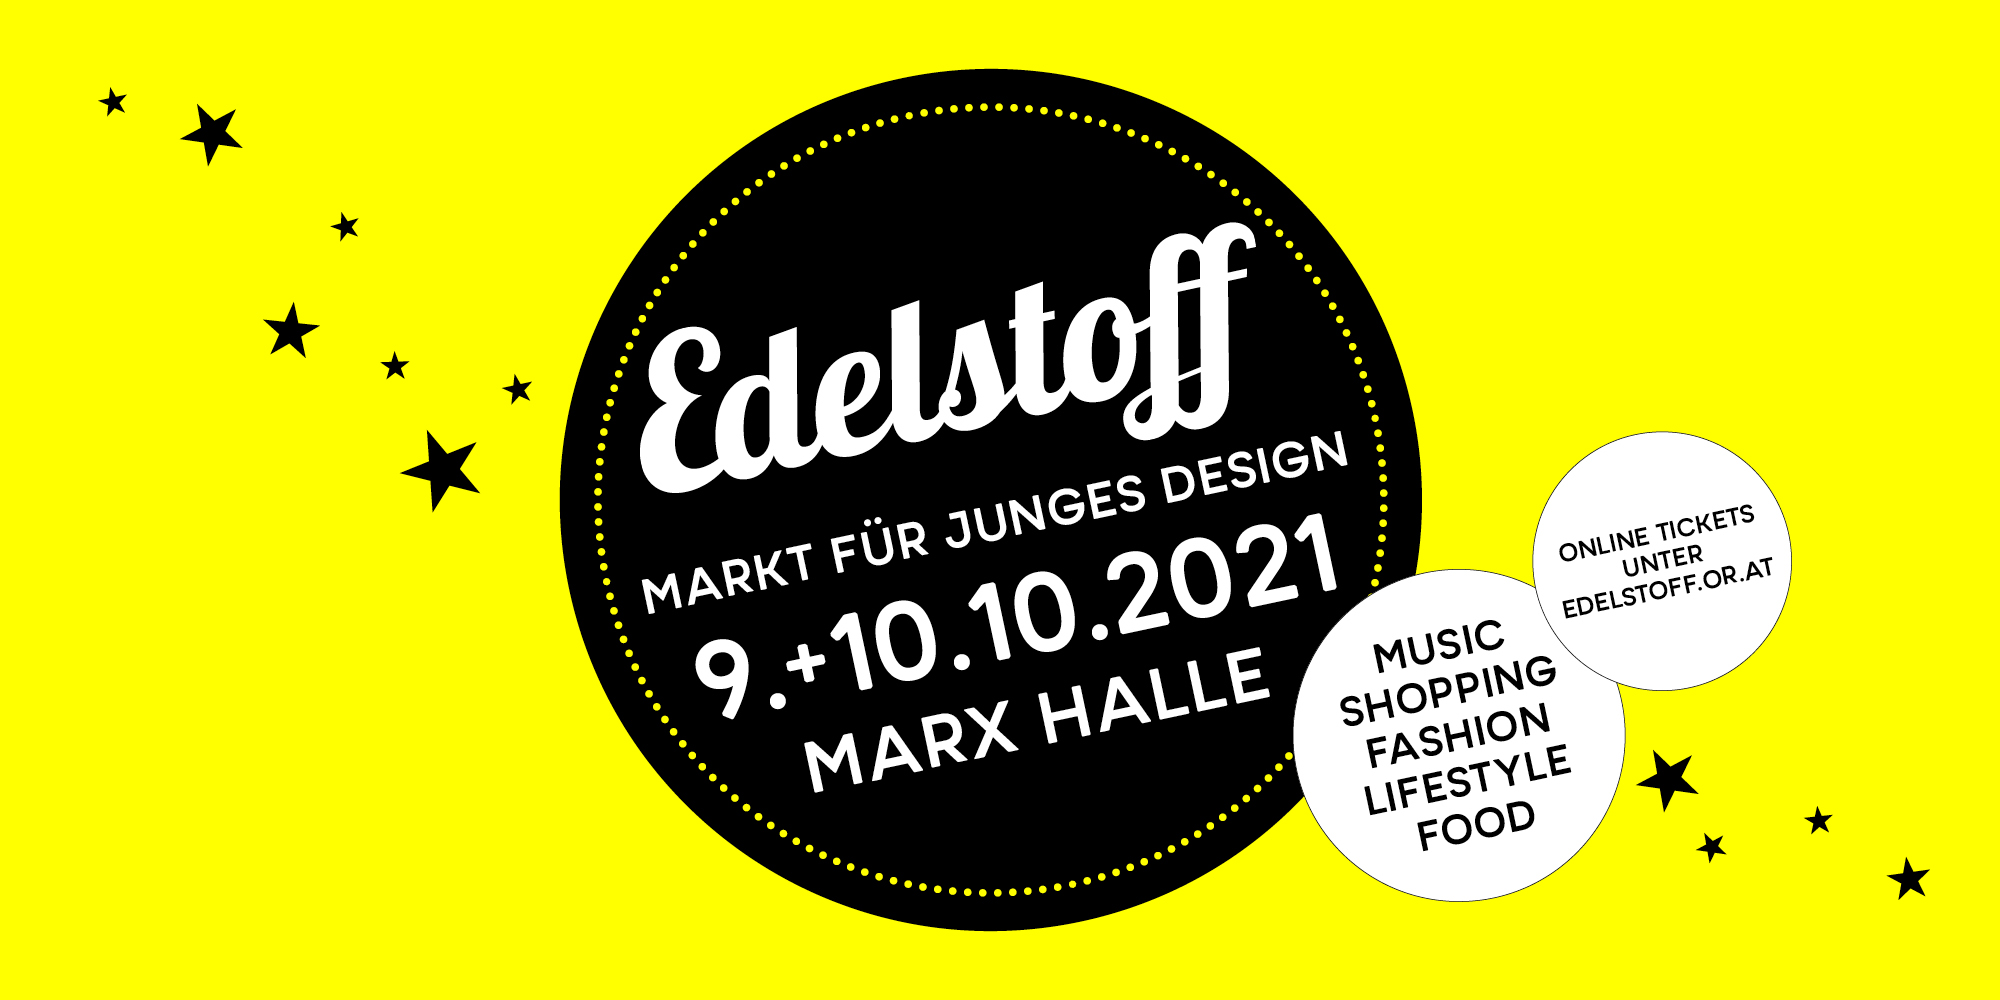 You are currently viewing Edelstoff Herbstmarkt – Markt für junges Design